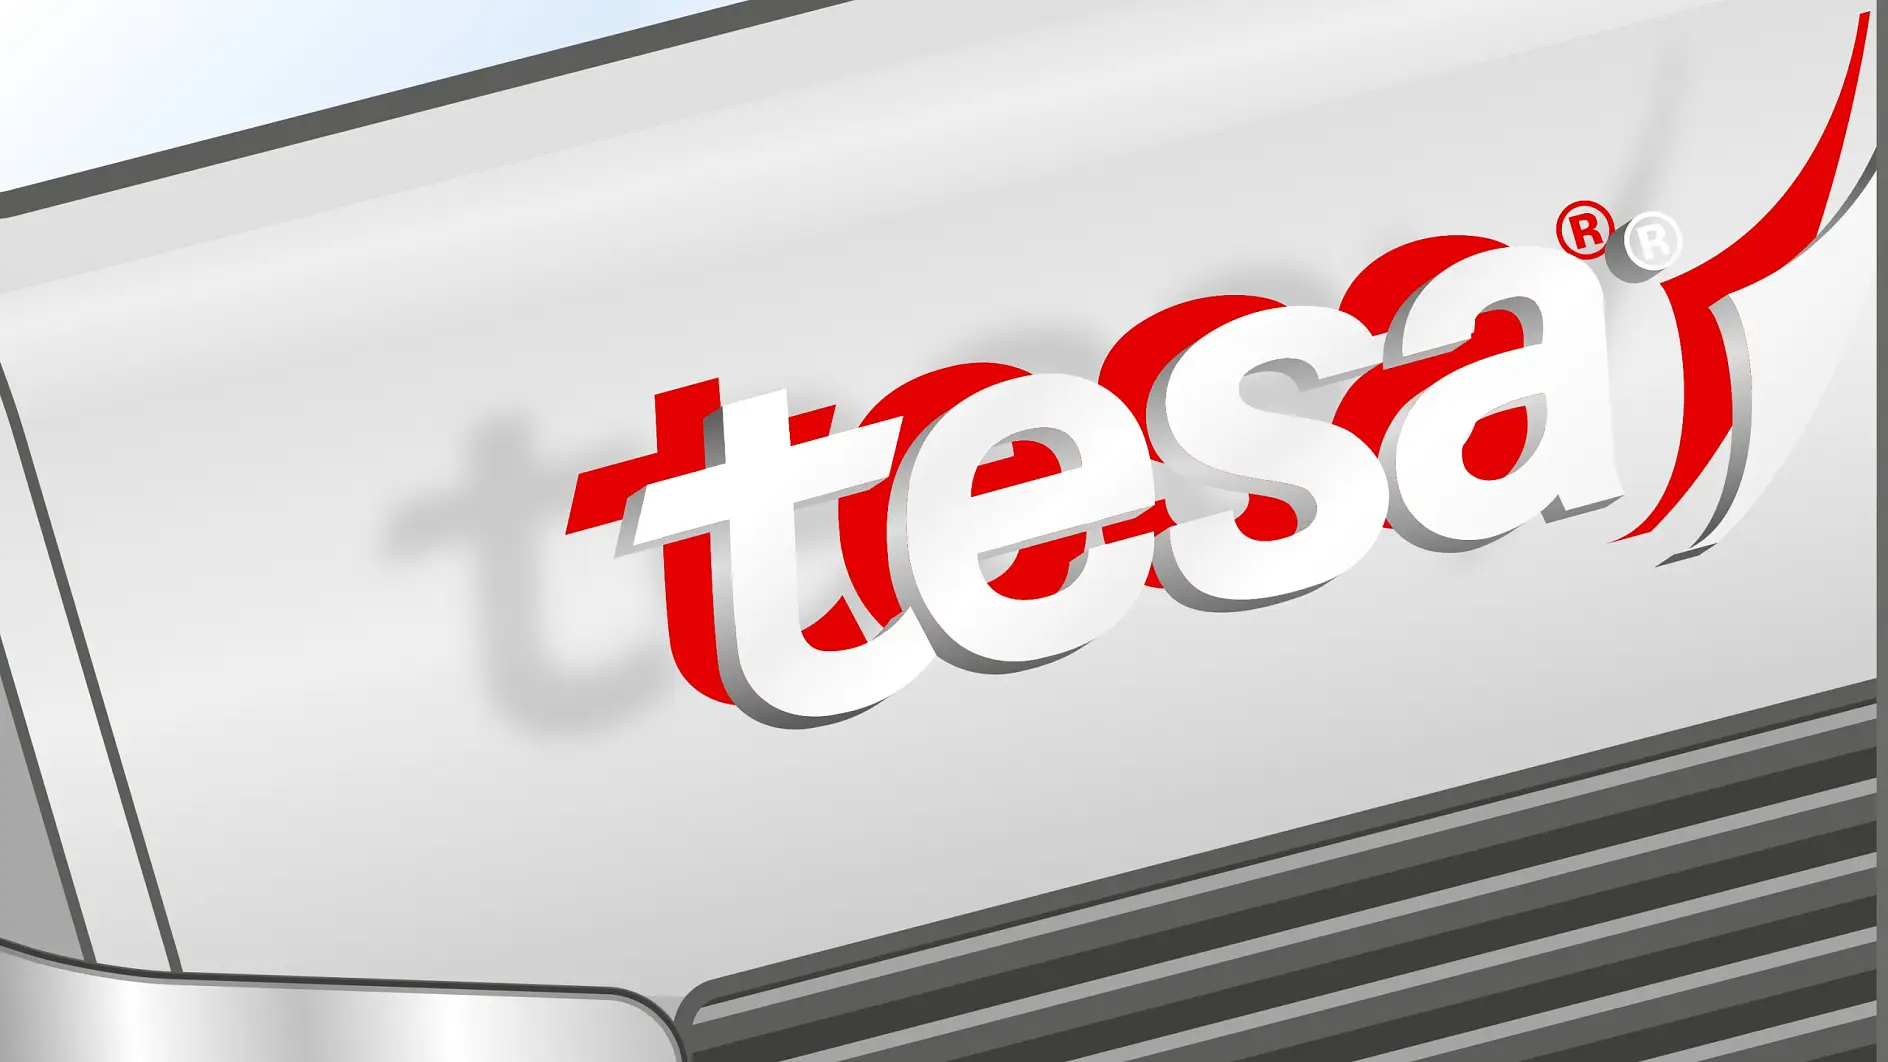 pojazdy specjalne tesa tape pojazdy ciężarowe mocowanie emblematów i tablic rejestracyjnych